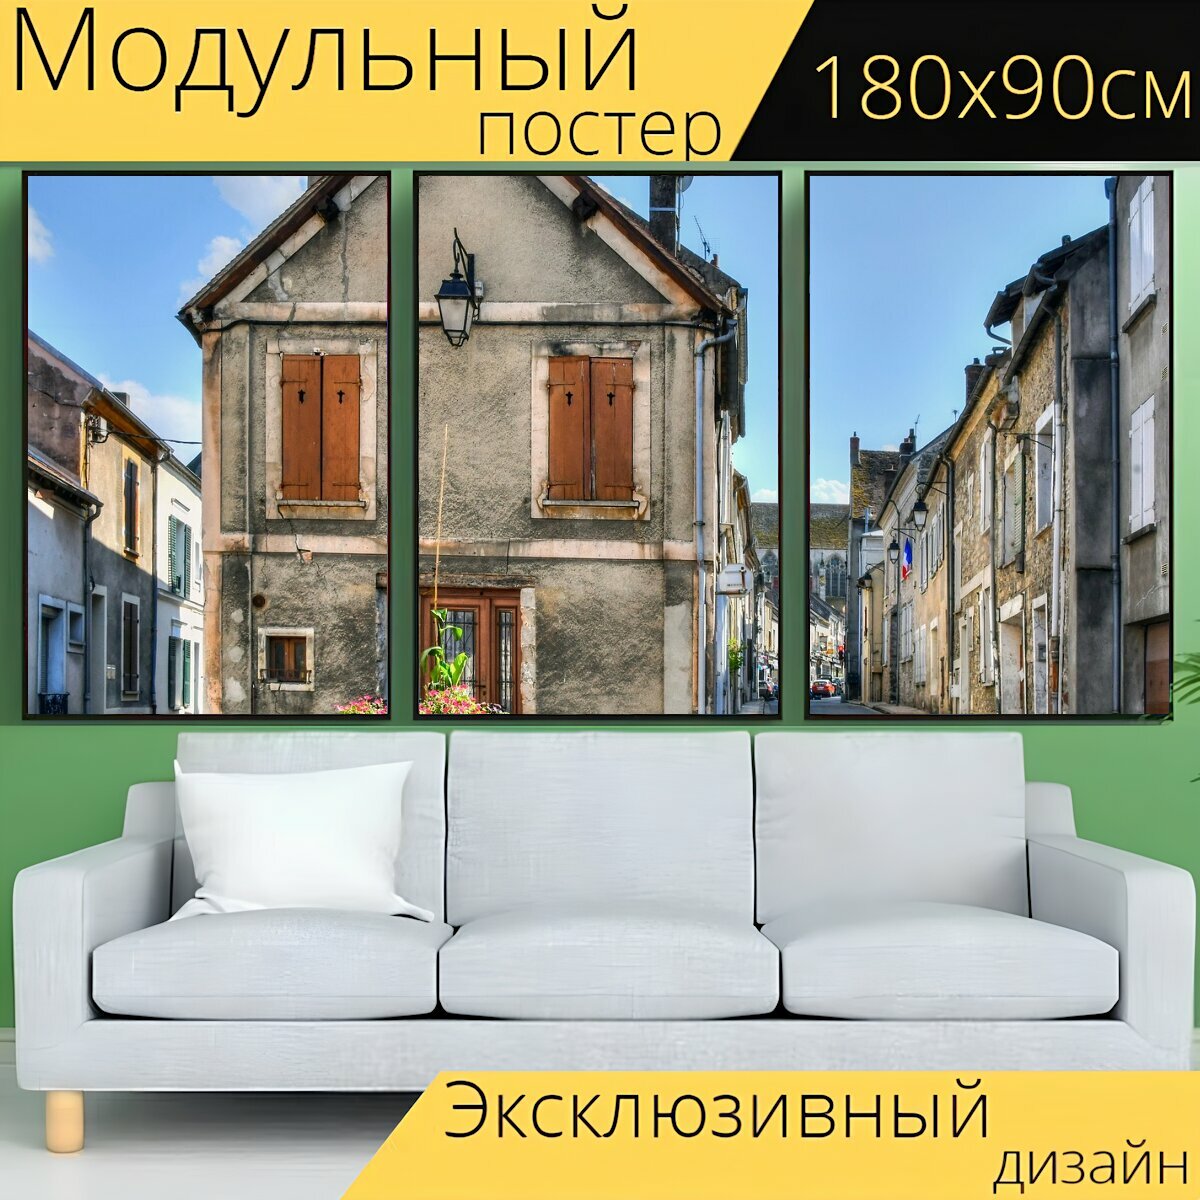 Модульный постер "Дом, аллея, улица" 180 x 90 см. для интерьера